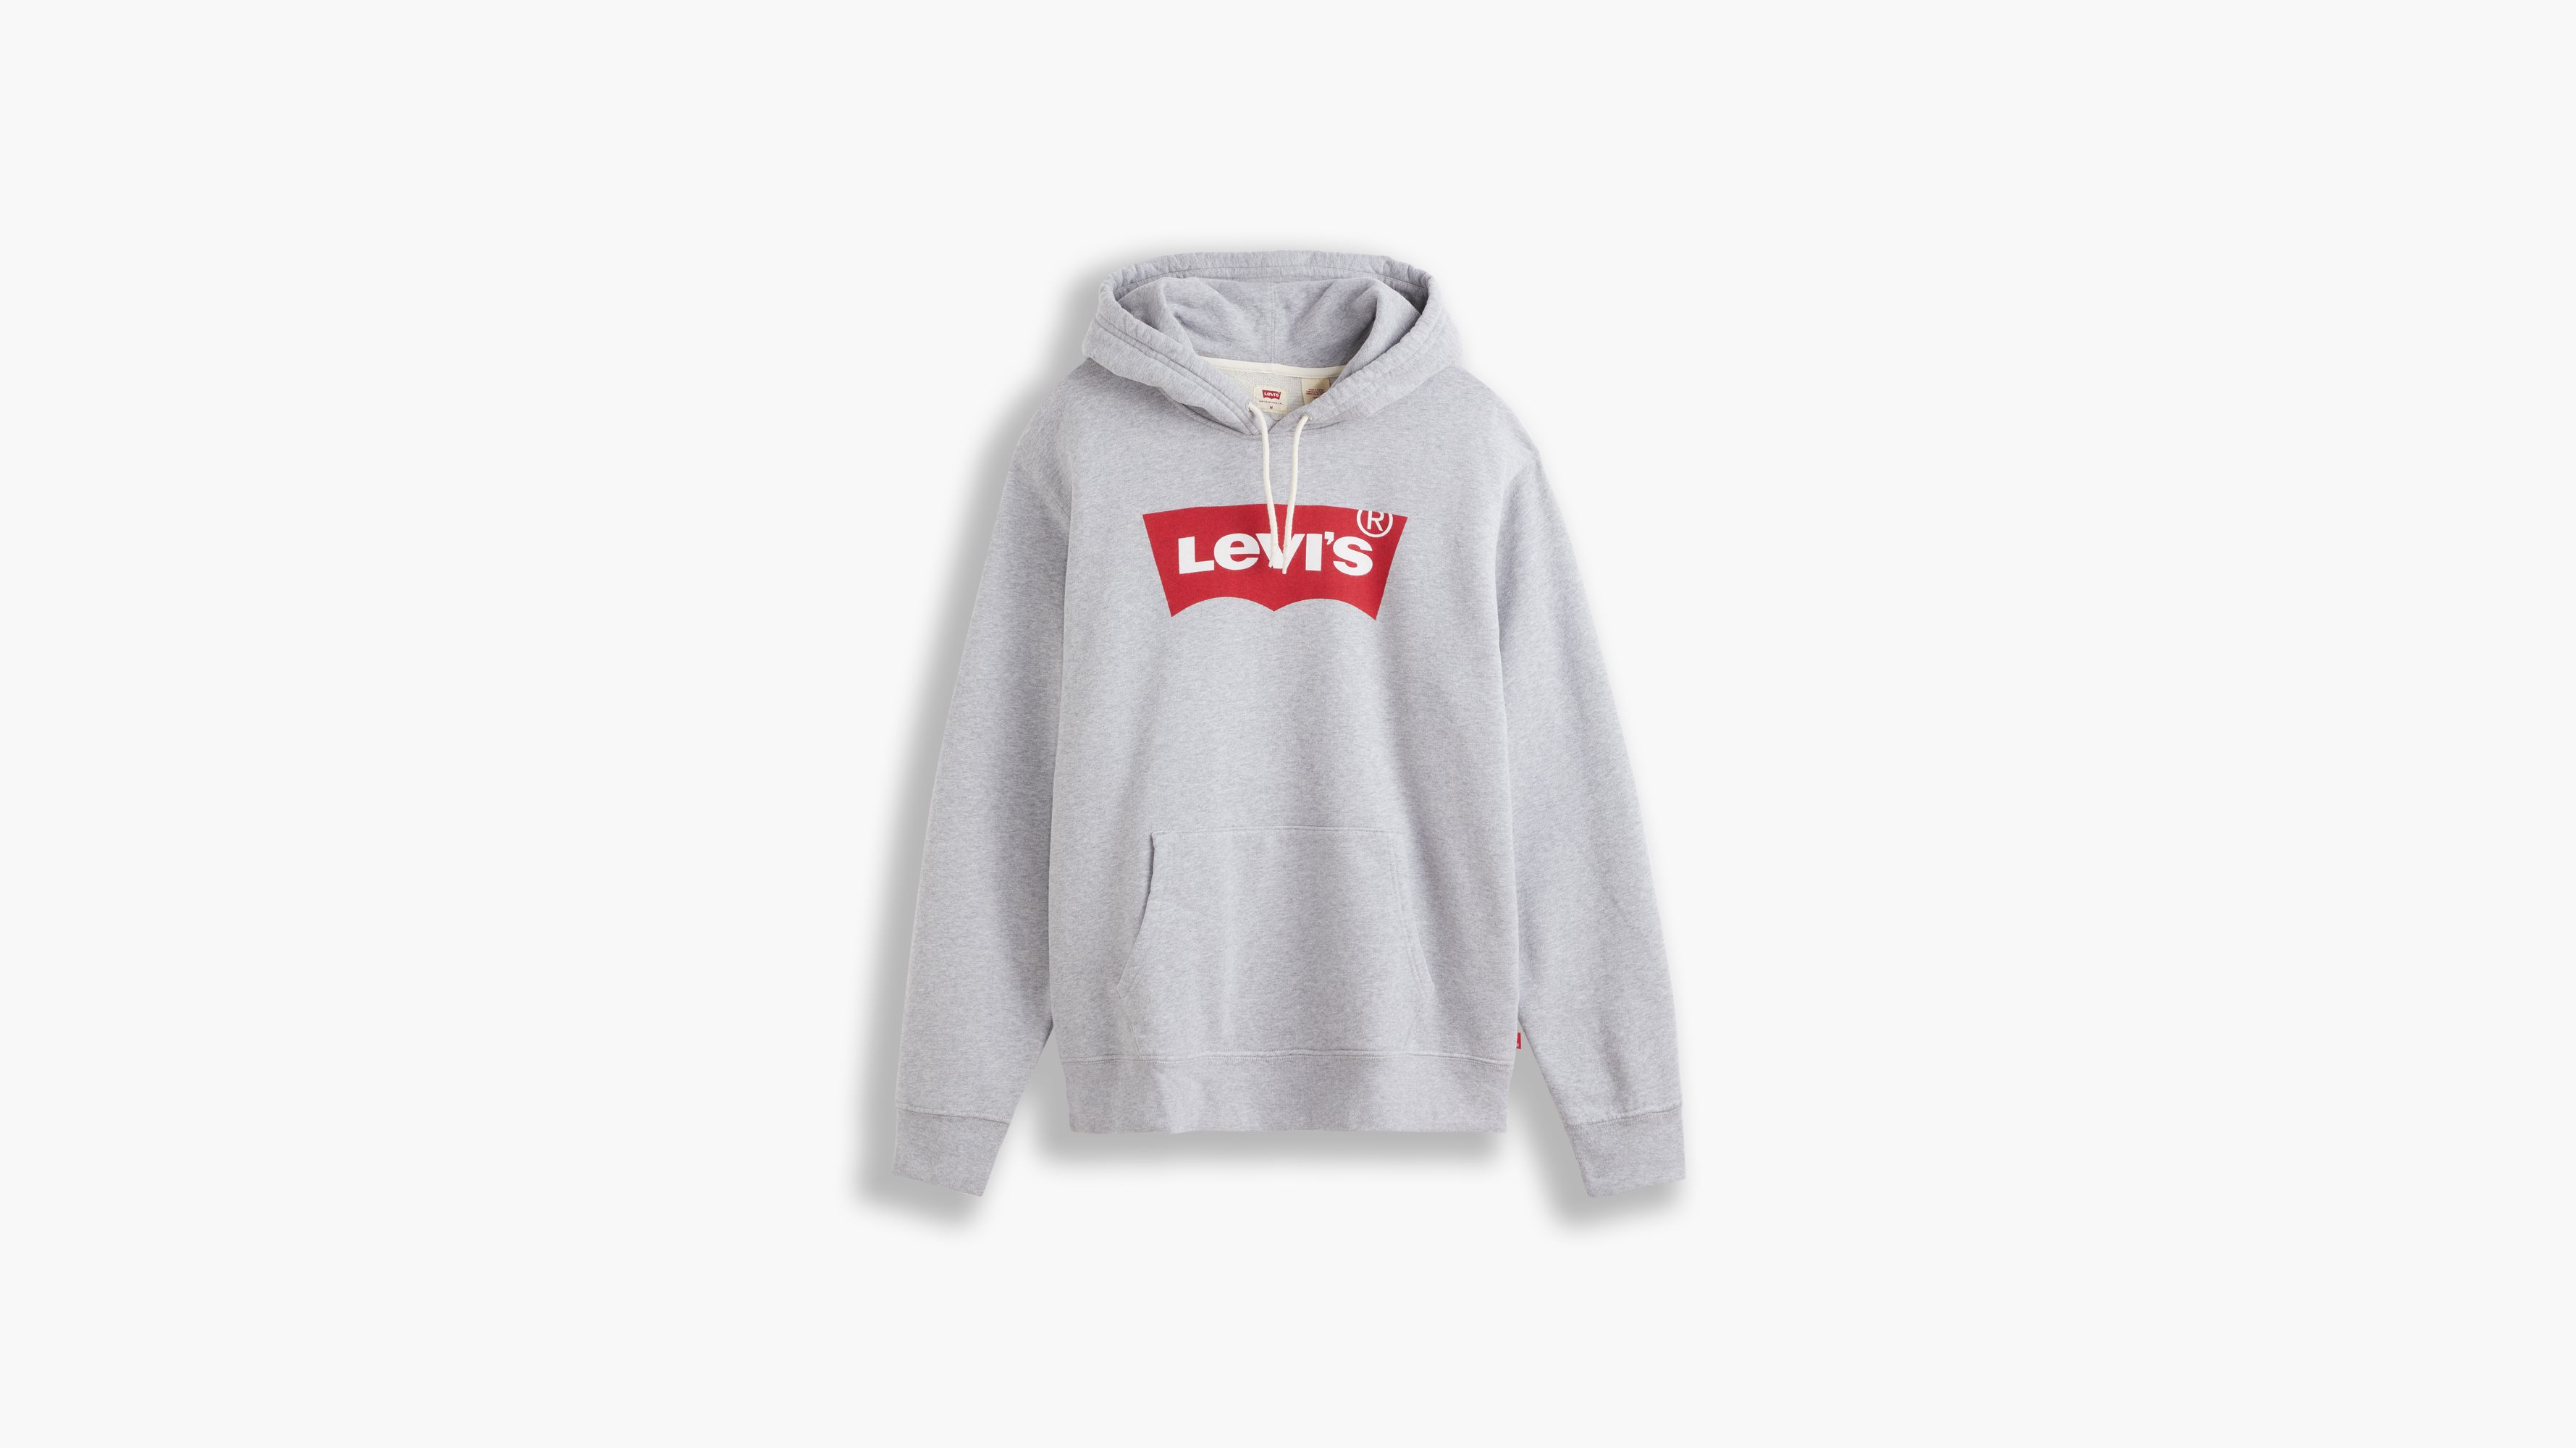 levis sweatshirt for men